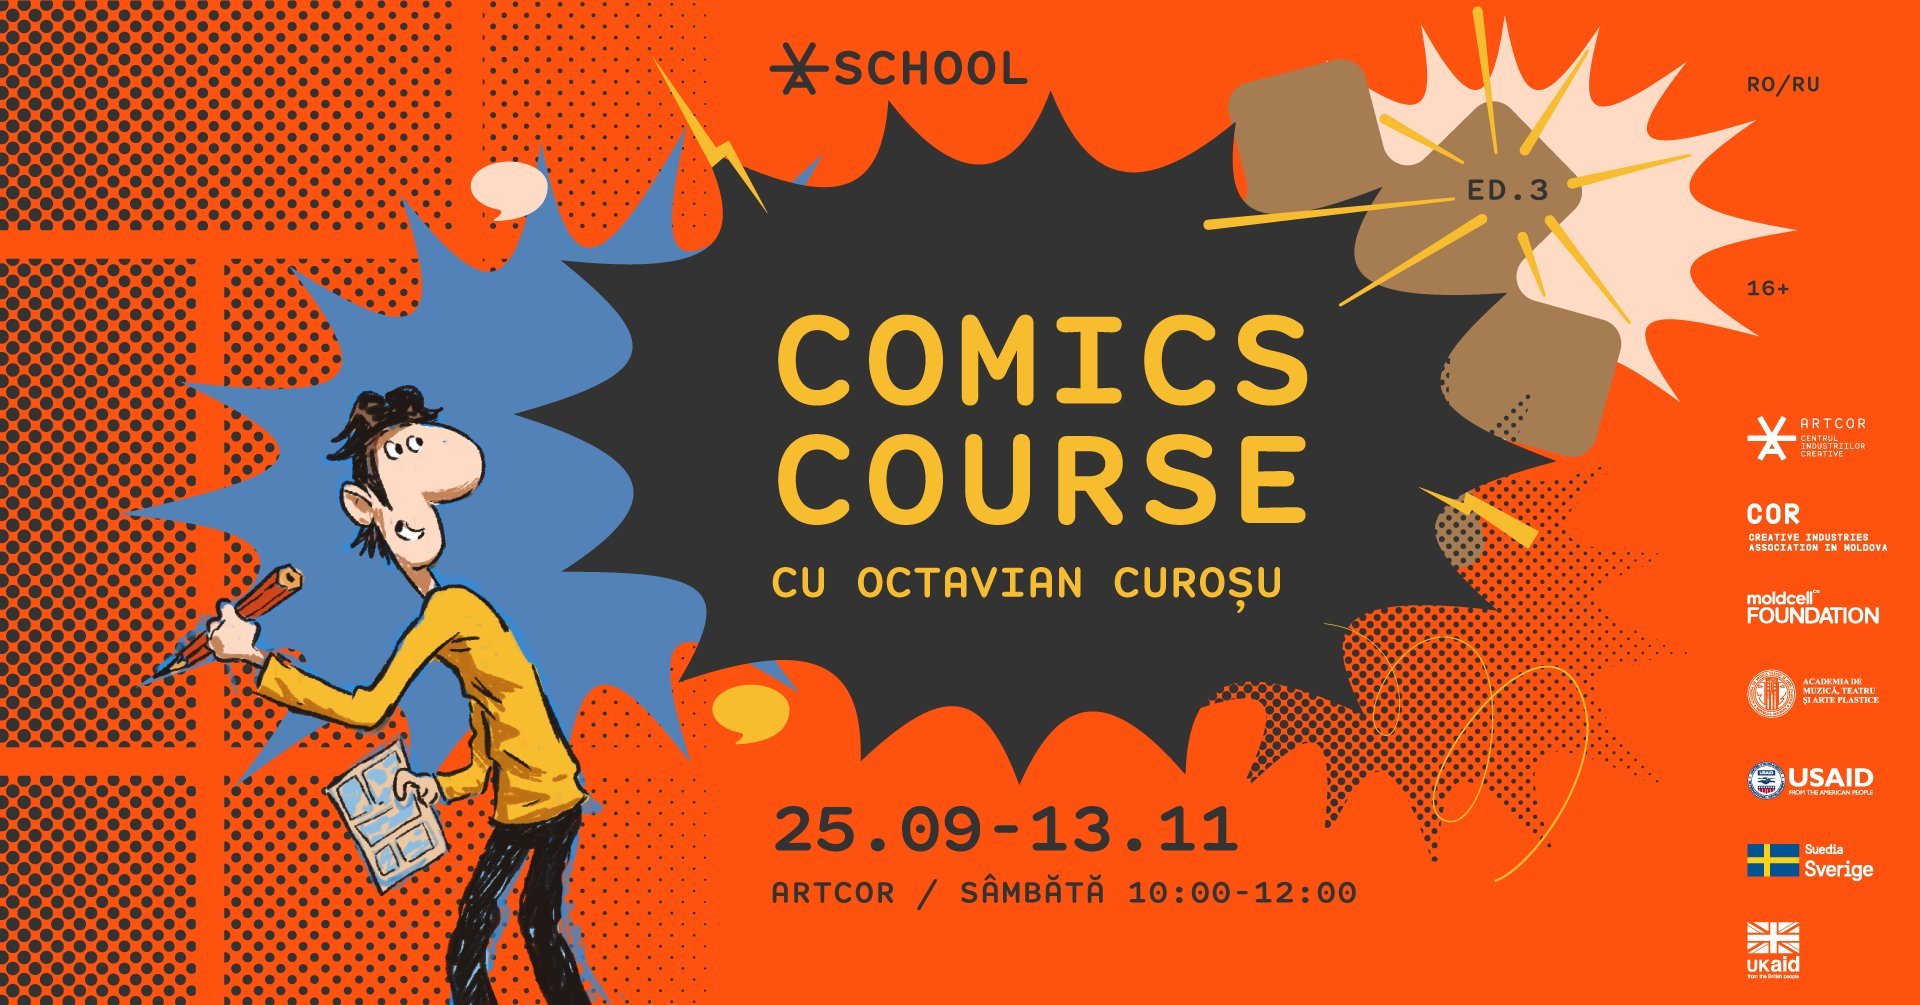 Comics Course la Școala Artcor cu Octavian Curoșu